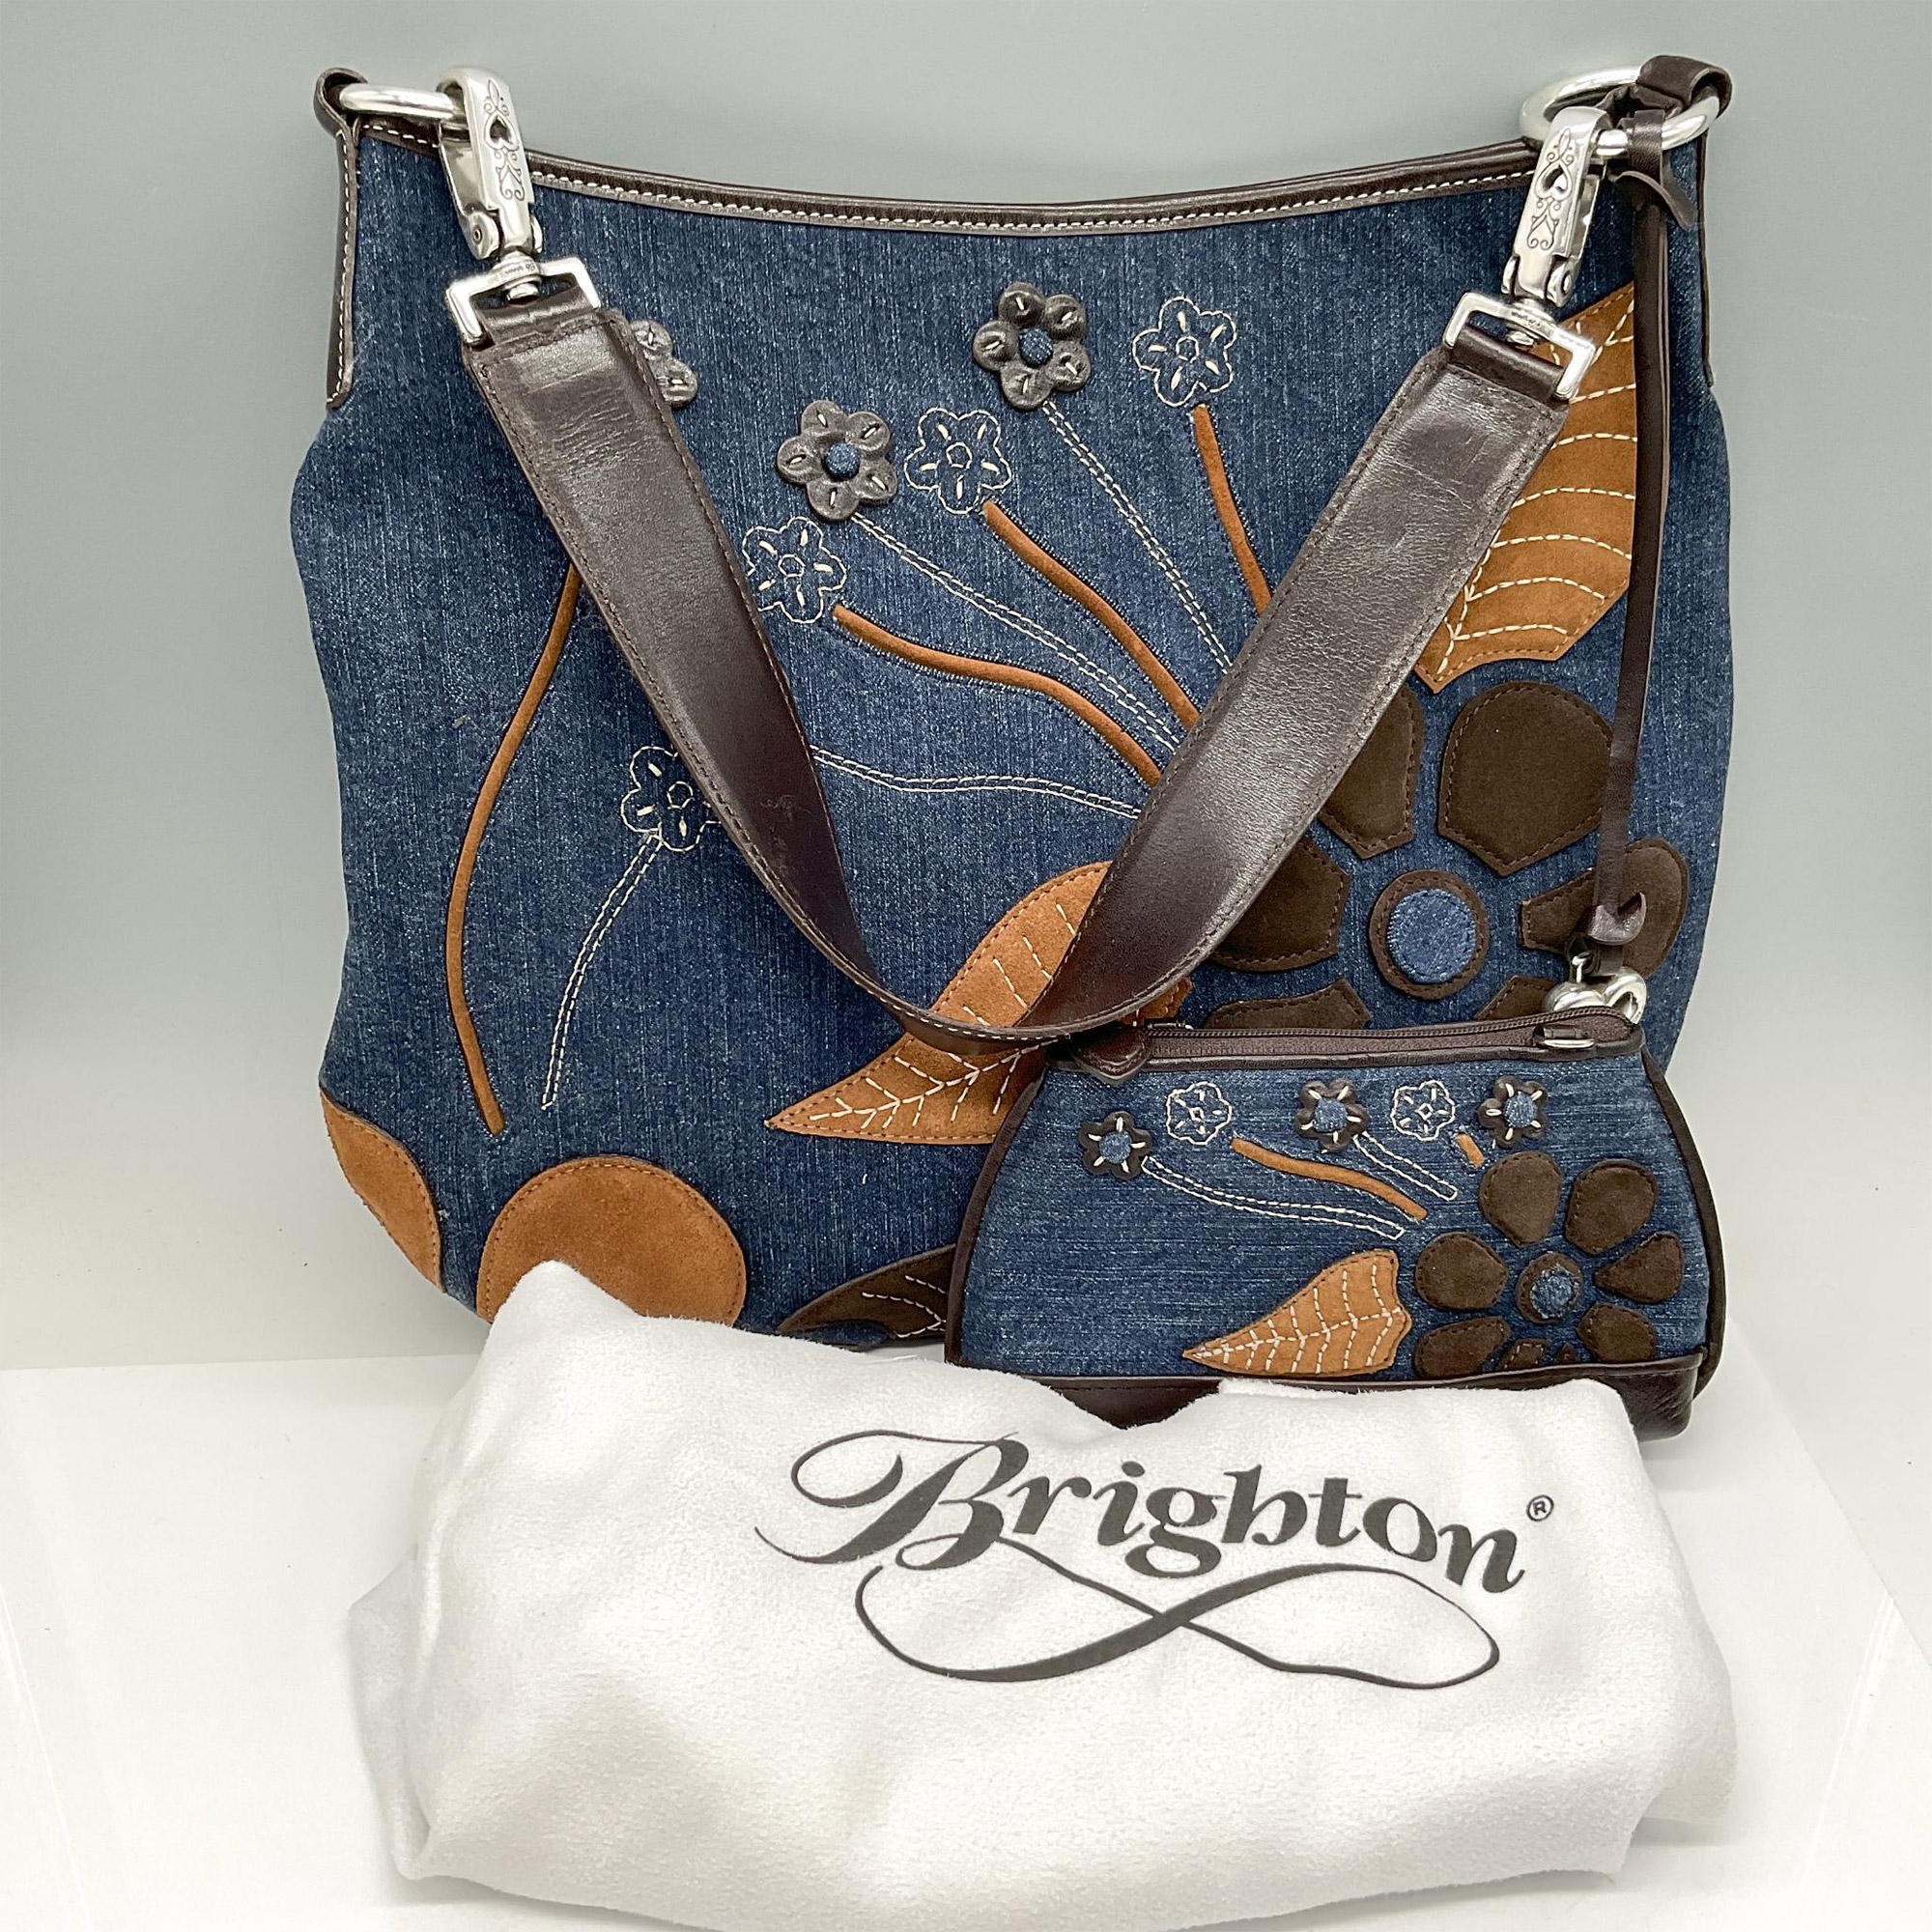 2pc Brighton Denim Shoulder Bag + Wallet - Image 4 of 4